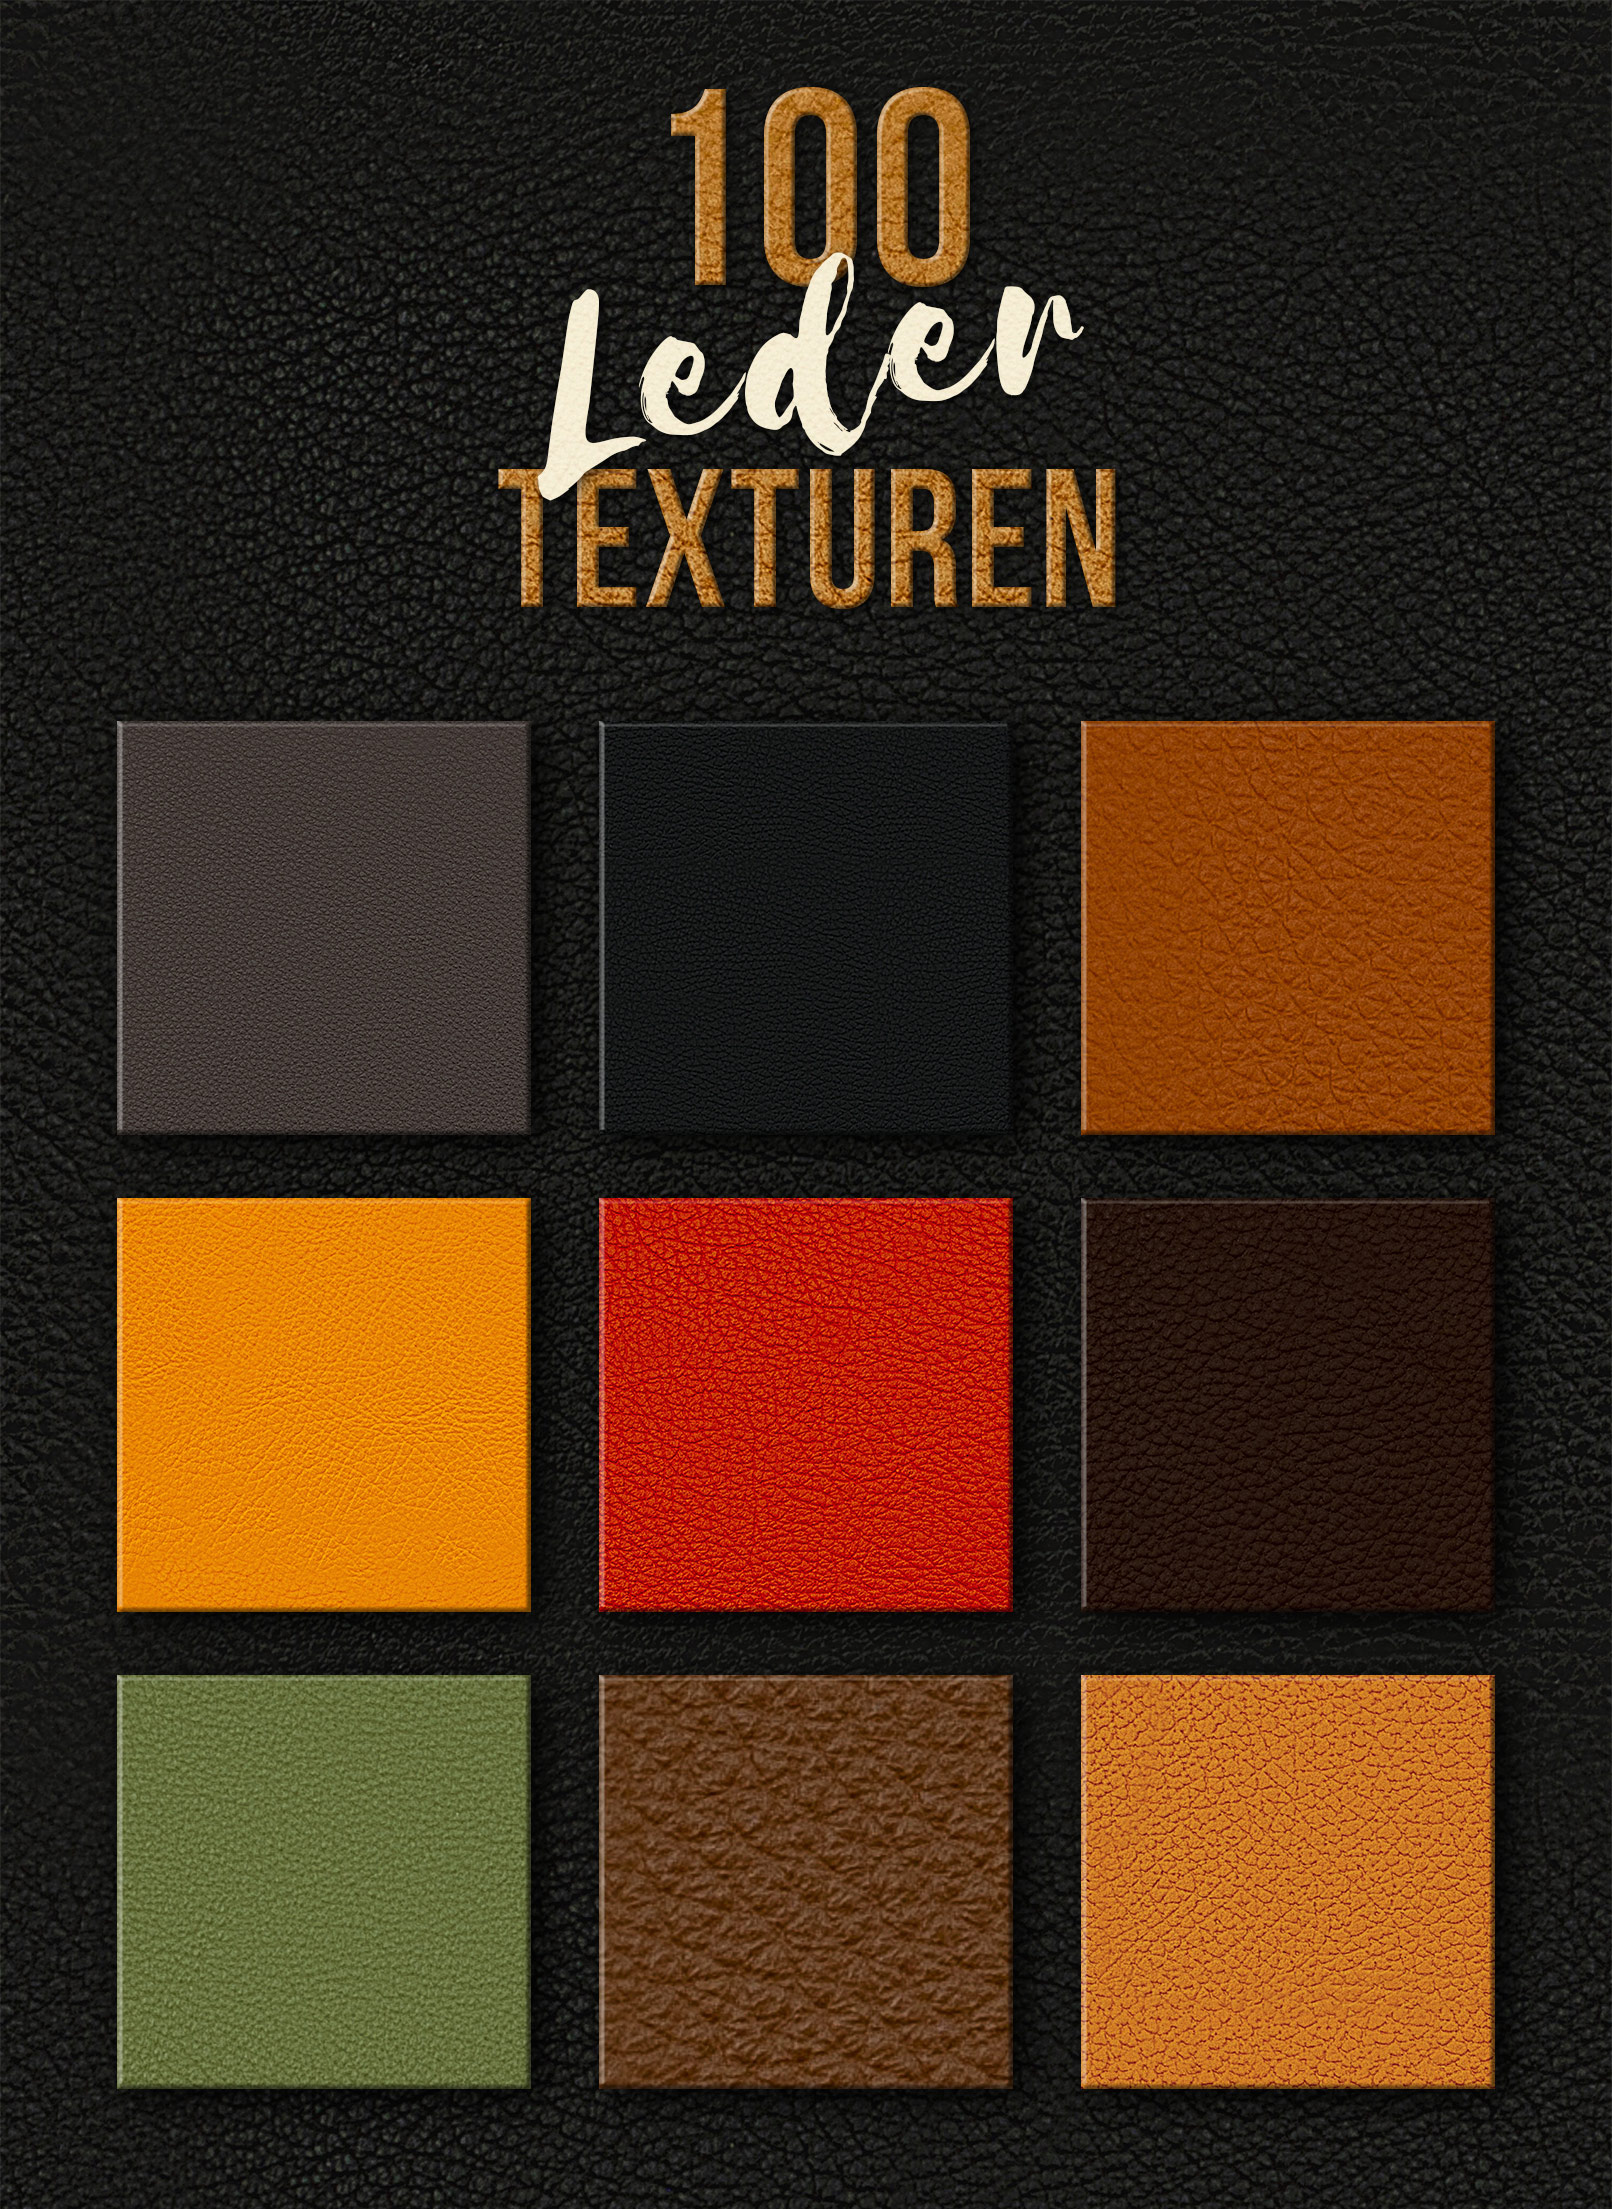 Leder-Texturen in verschiedenen Farben und mit unterschiedlicher Struktur